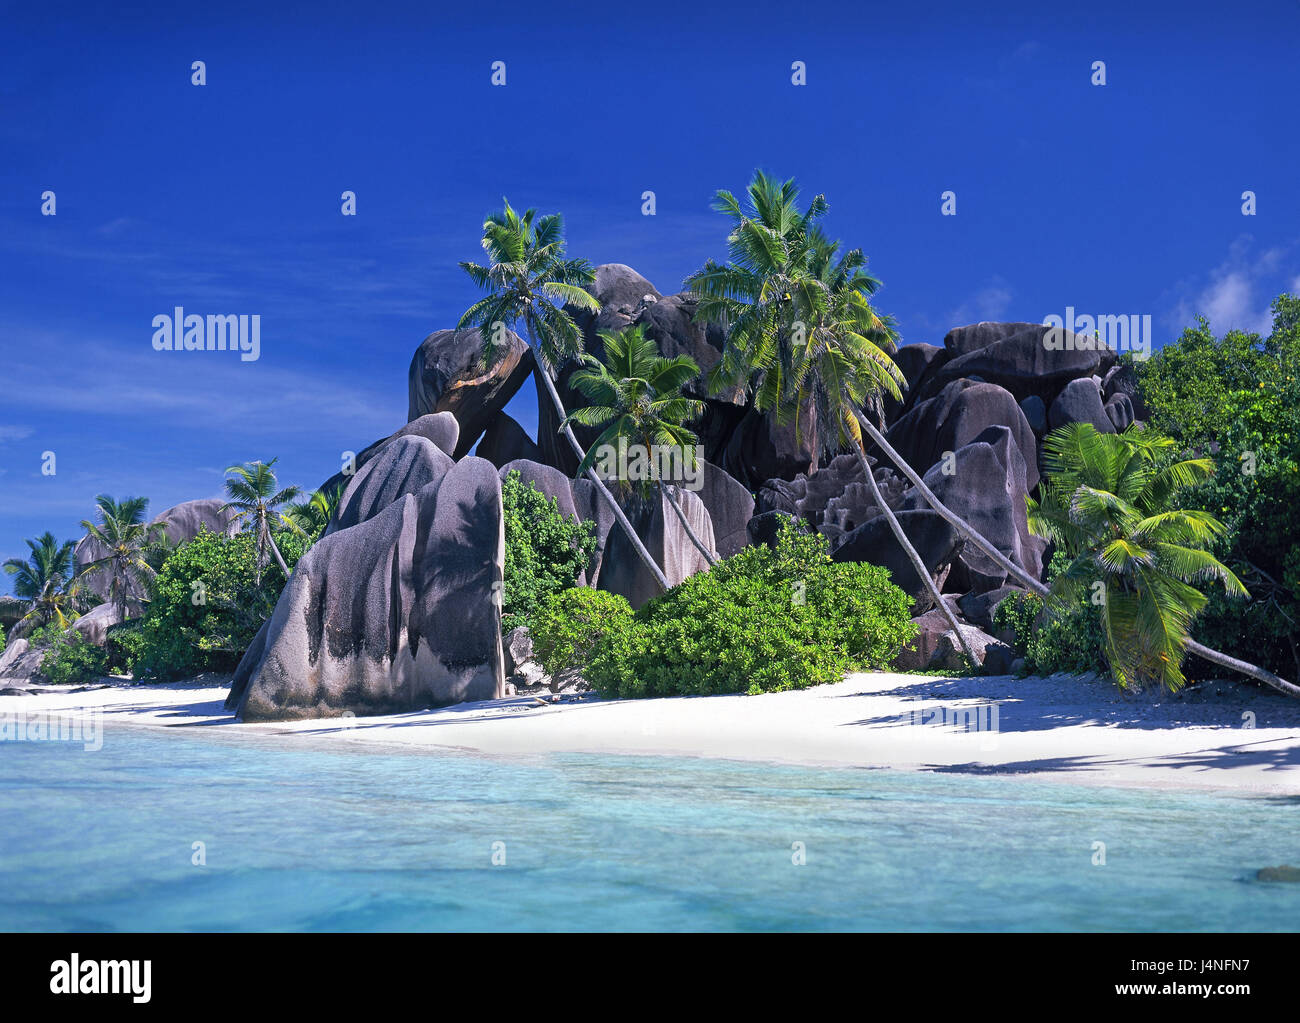 Las islas Seychelles, La Digue, playa Anse Cocos, rock, palmas, estado insular, isla, costa, roca de granito, nadie, agua, claramente, el azul turquesa, el descanso, el silencio, la soledad, el destino, vacaciones, vacaciones Paradise, playa de ensueño, sueño de vacaciones, isla paraíso, Dream Island, Foto de stock